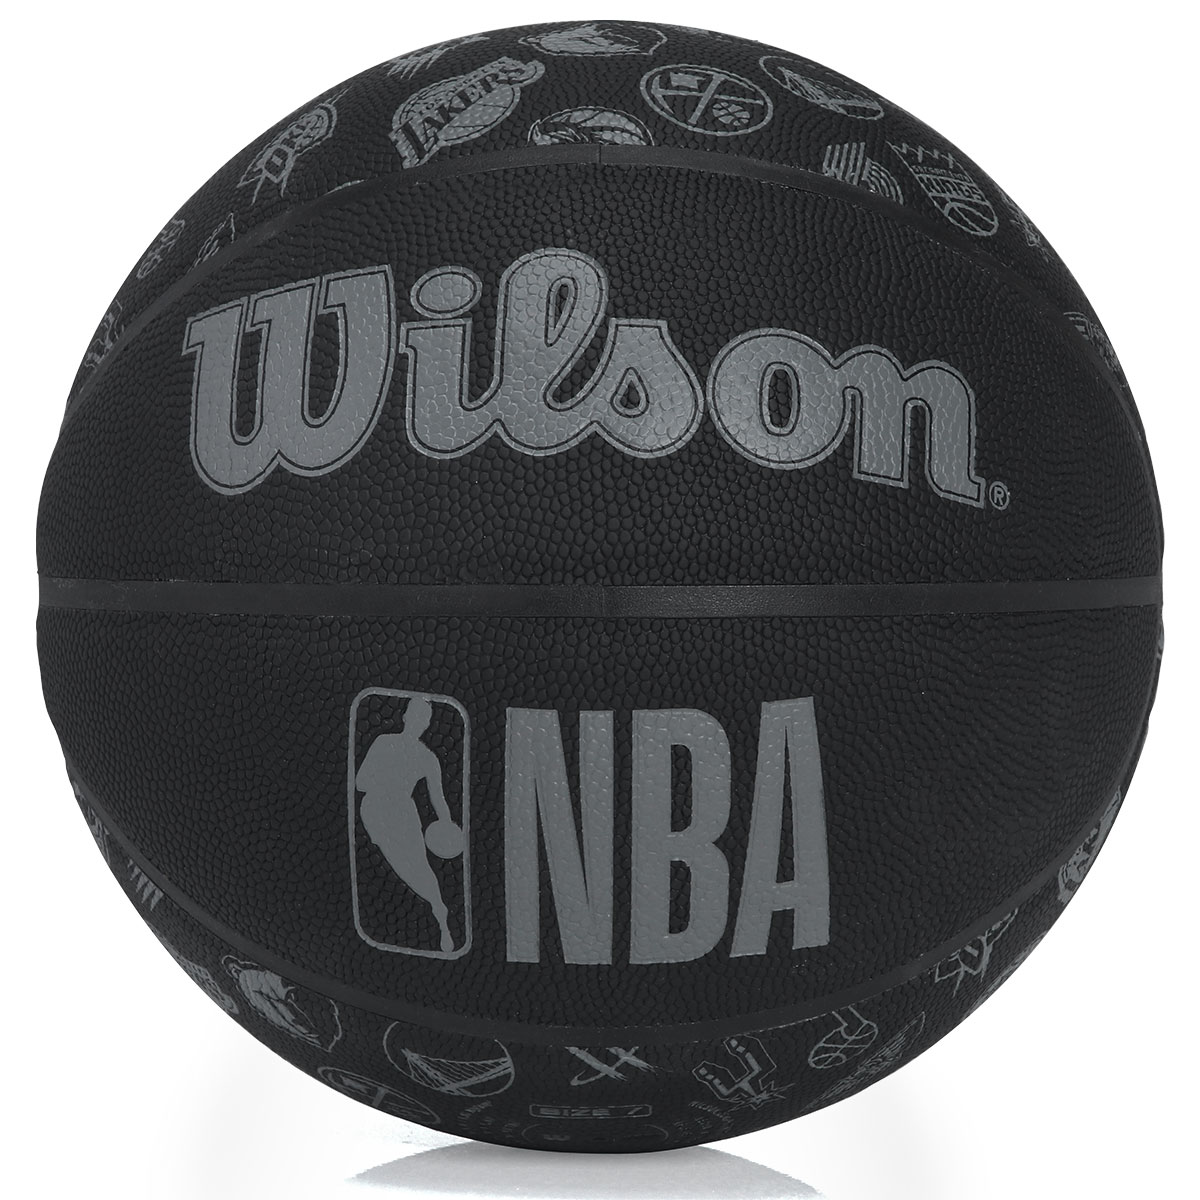 Bola de Basquete Wilson NBA All Team Black Tam 7 Preta - PróSpin.com.br